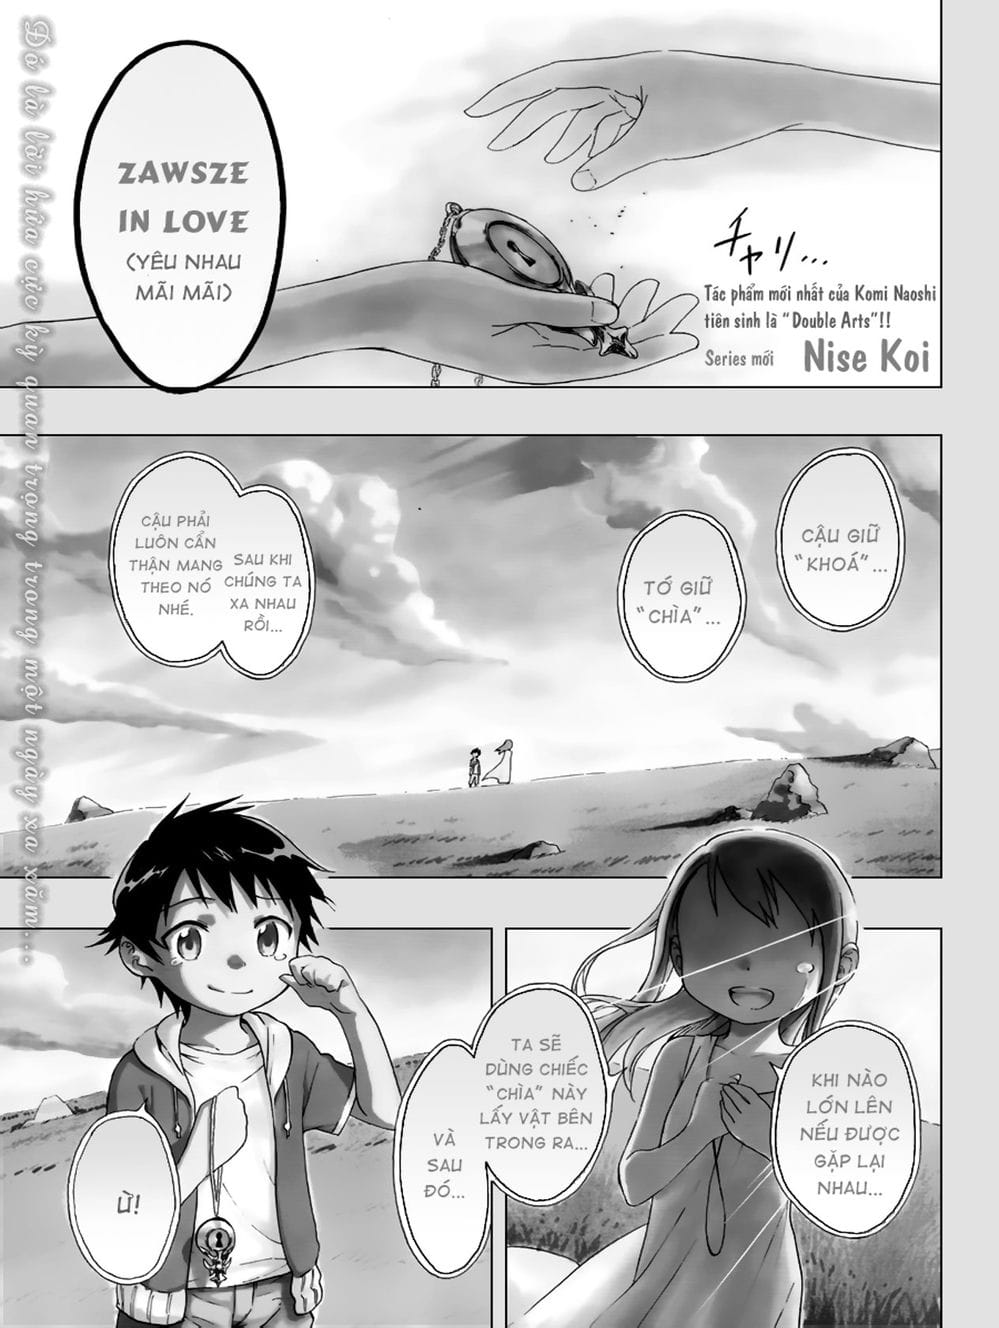 Truyện Tranh Tình Yêu Giả Tạo - Nisekoi trang 2